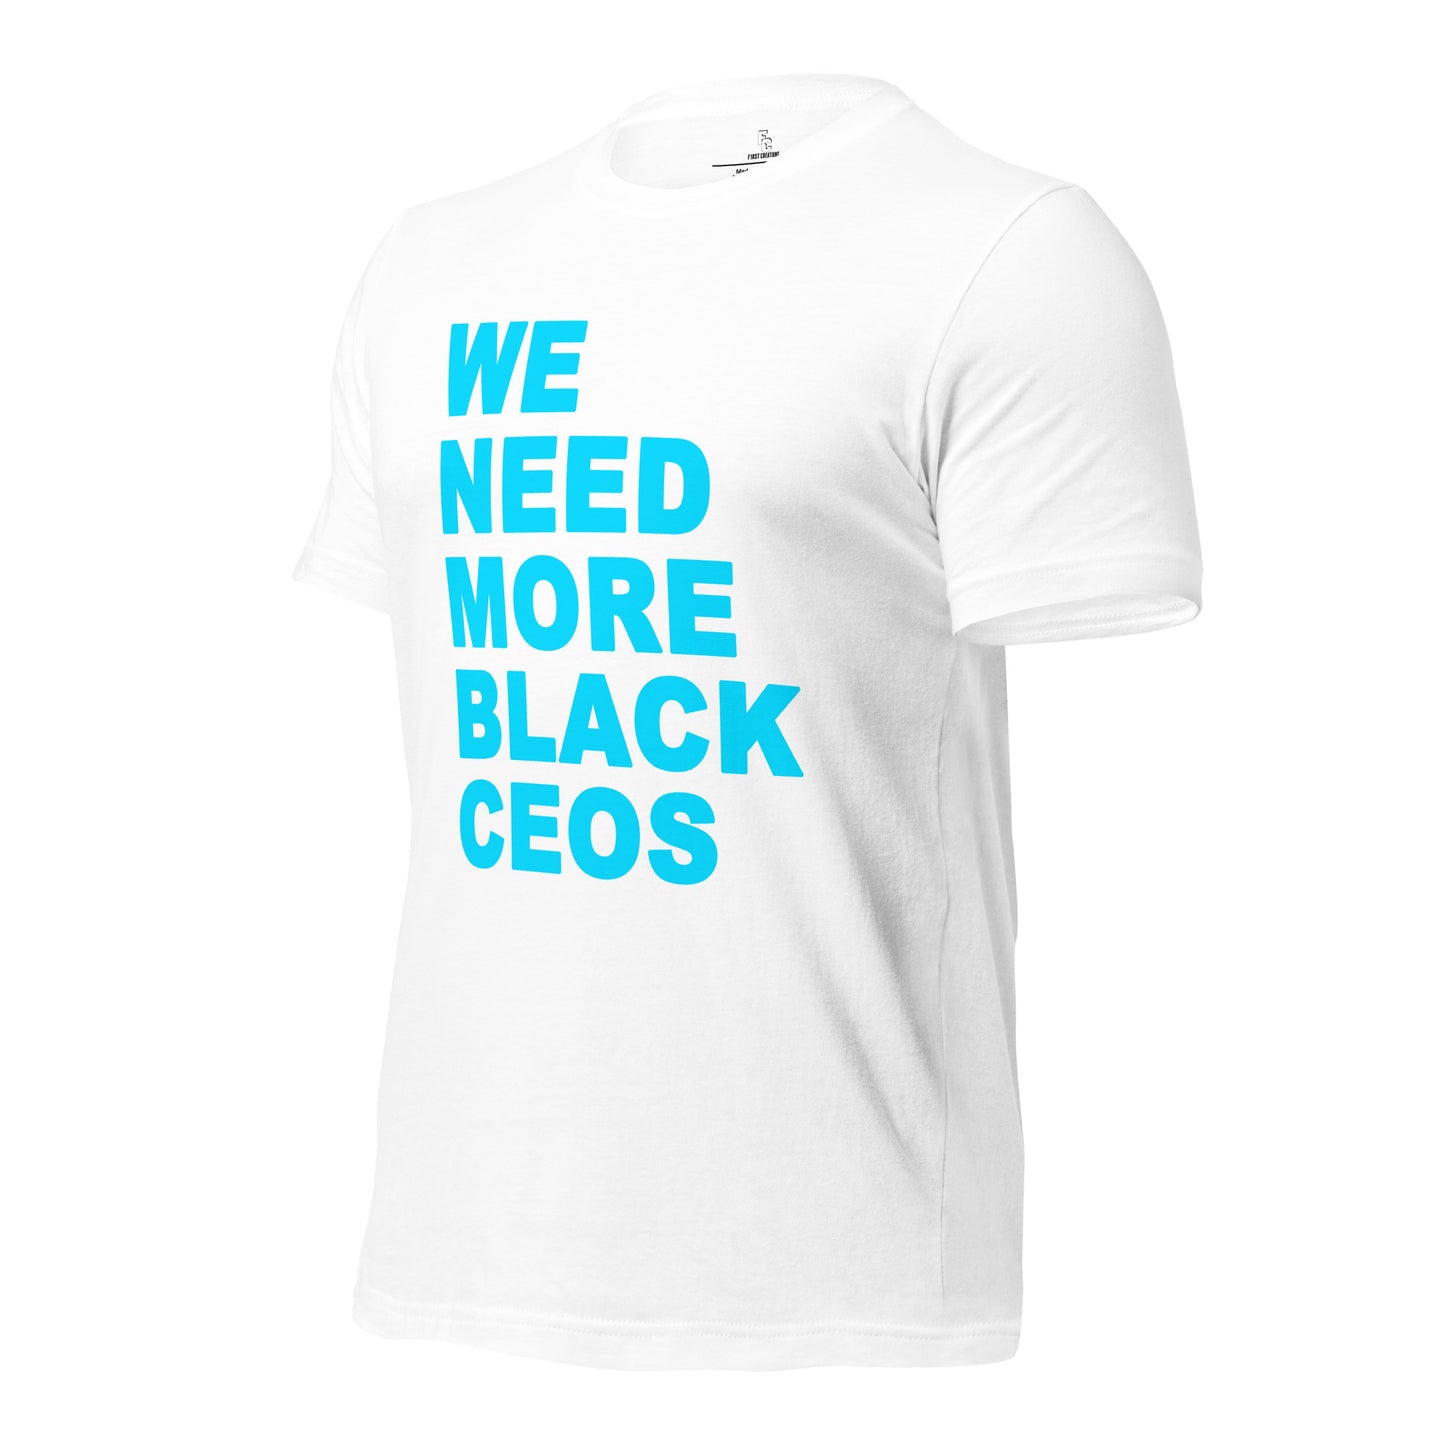 We Need More Black CEOs